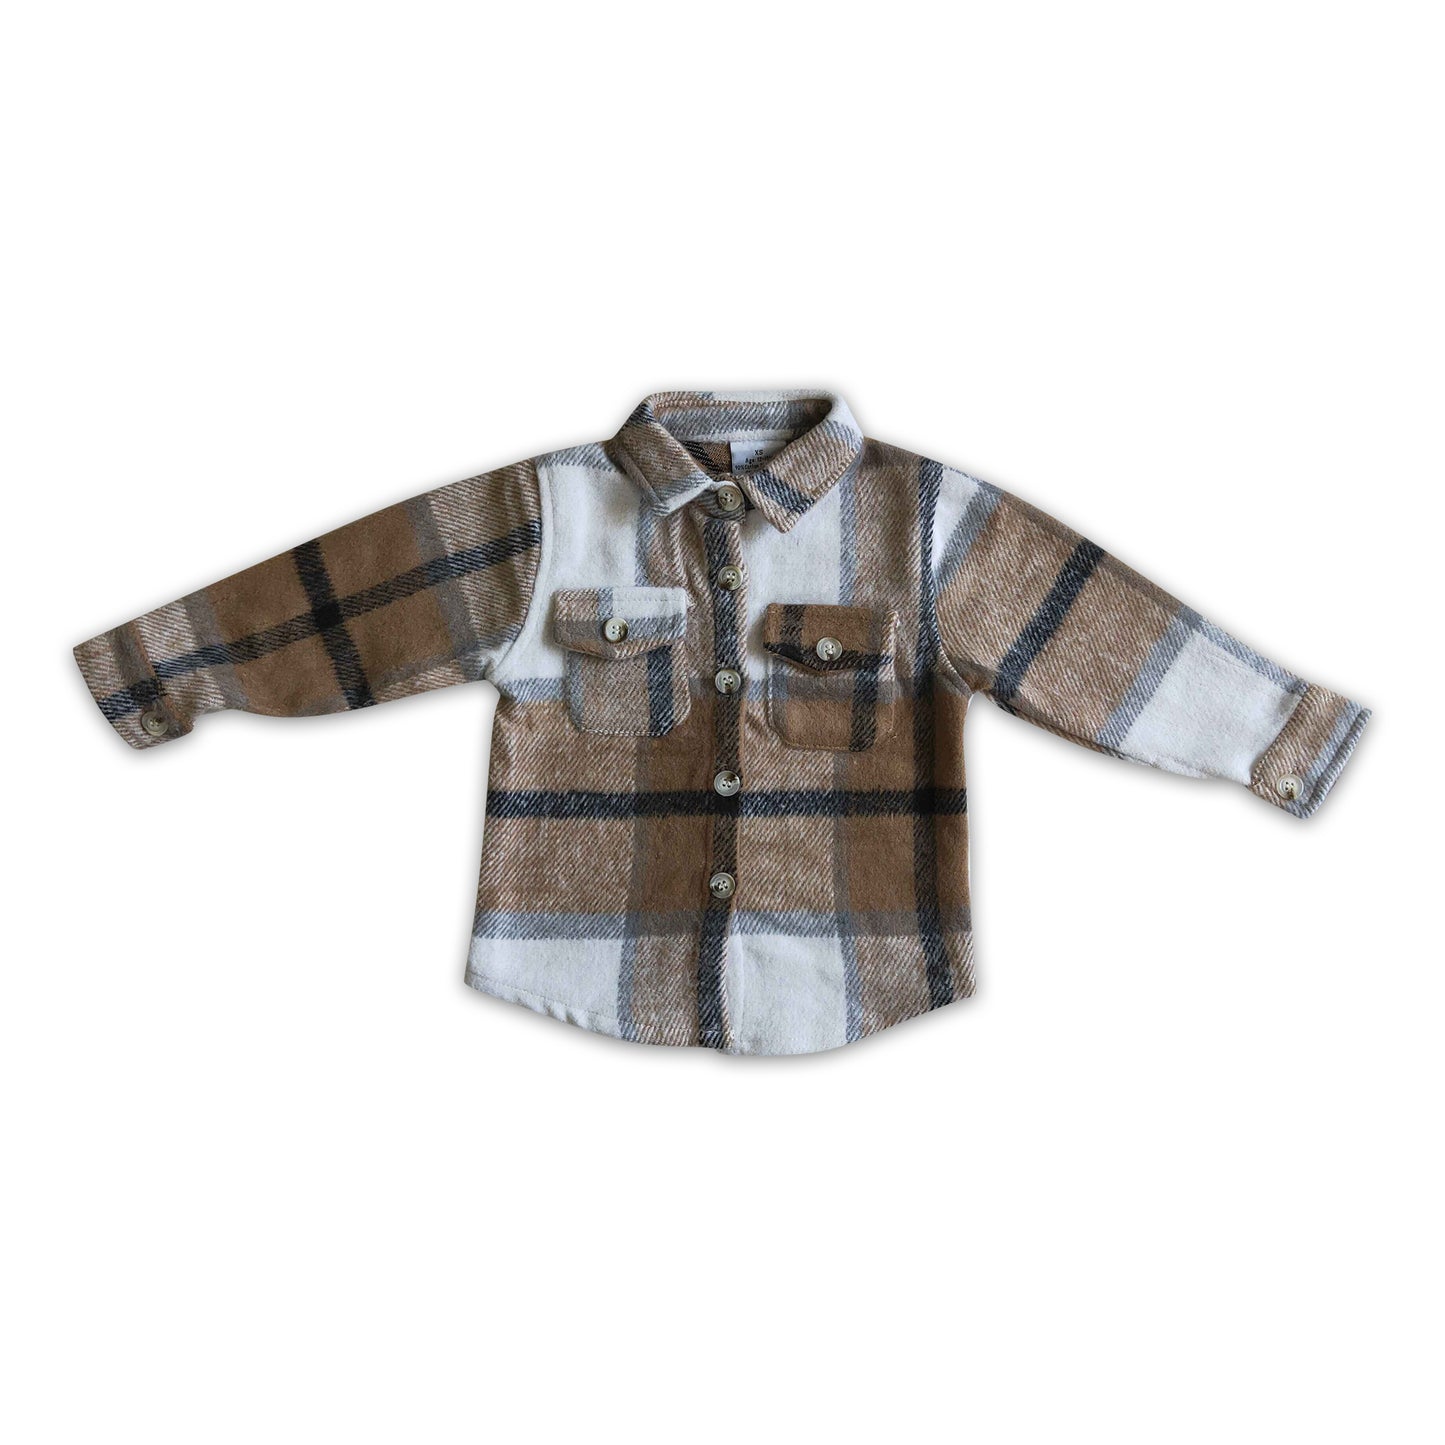 Khaki plaid cotton pocket boy super thick flannel button up shirt